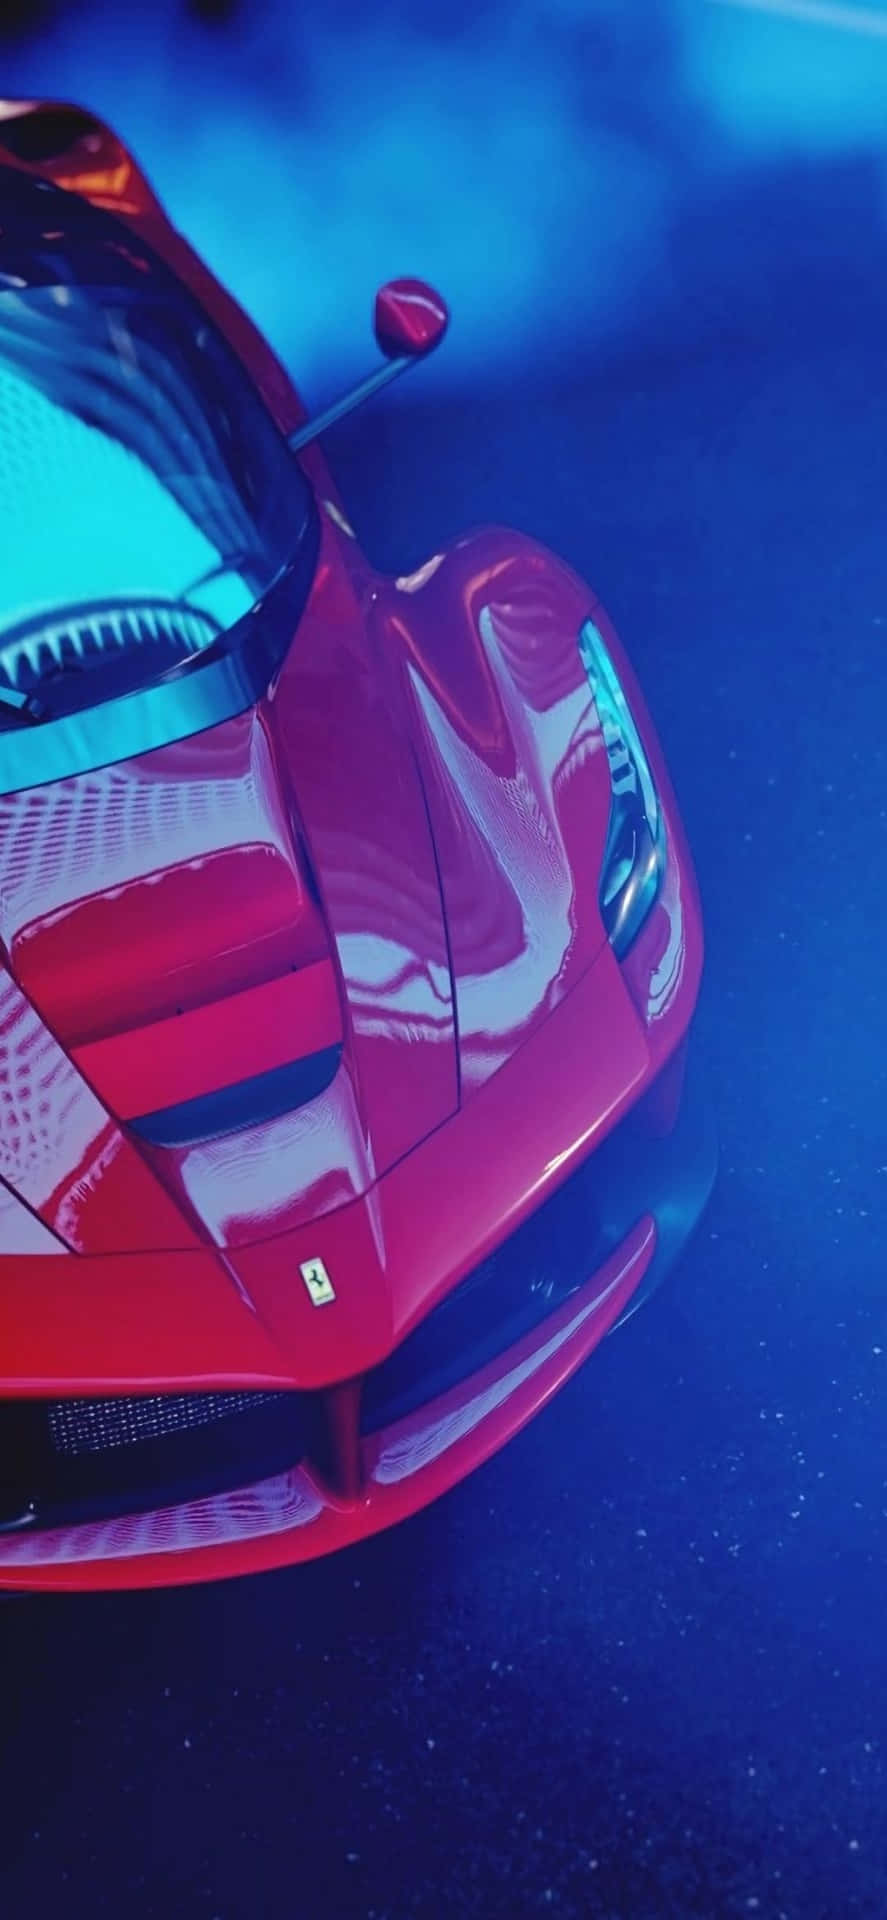 Iphonexs Max Ferrari Hintergrund Glänzendes Rotes Ferrari, Bedeckt Mit Blauem Rauch.